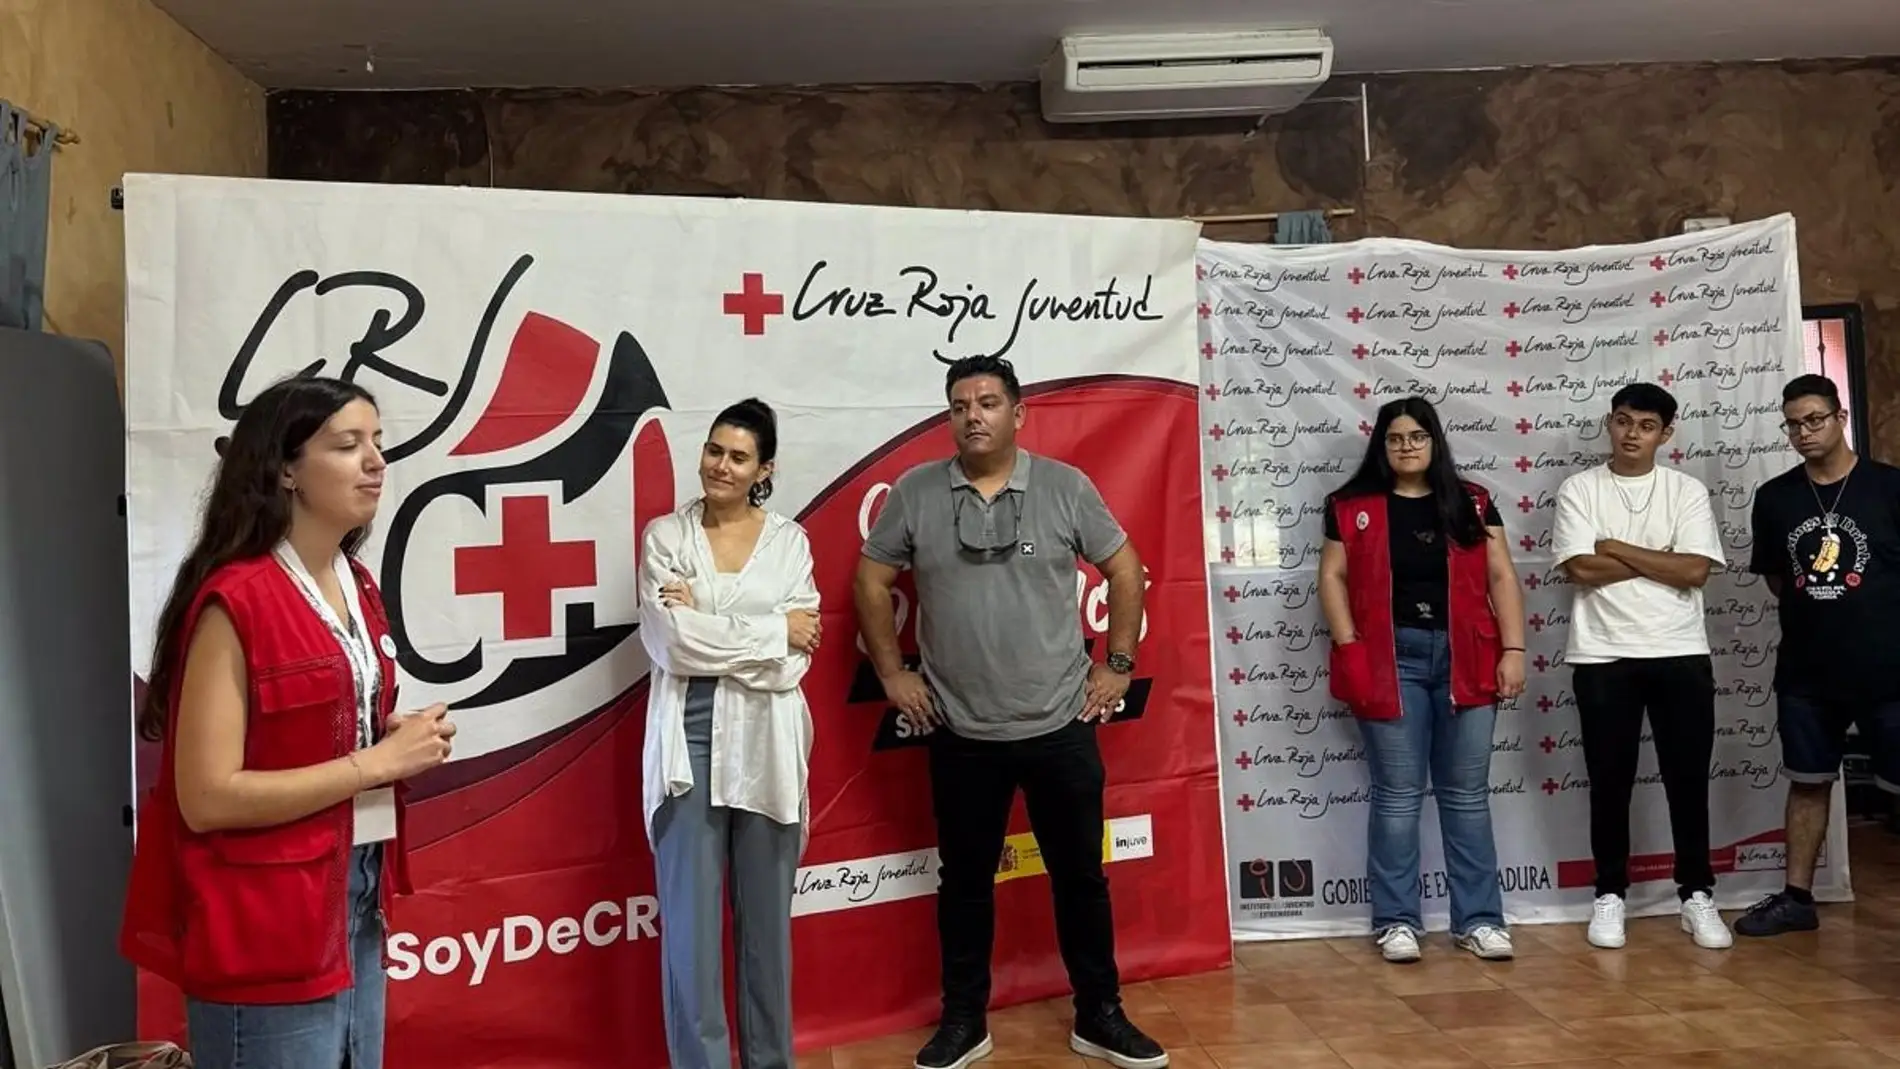 Cruz Roja Juventud Extremadura celebra acciones formativas e informativas sobre el voluntariado en su evento VeranEx